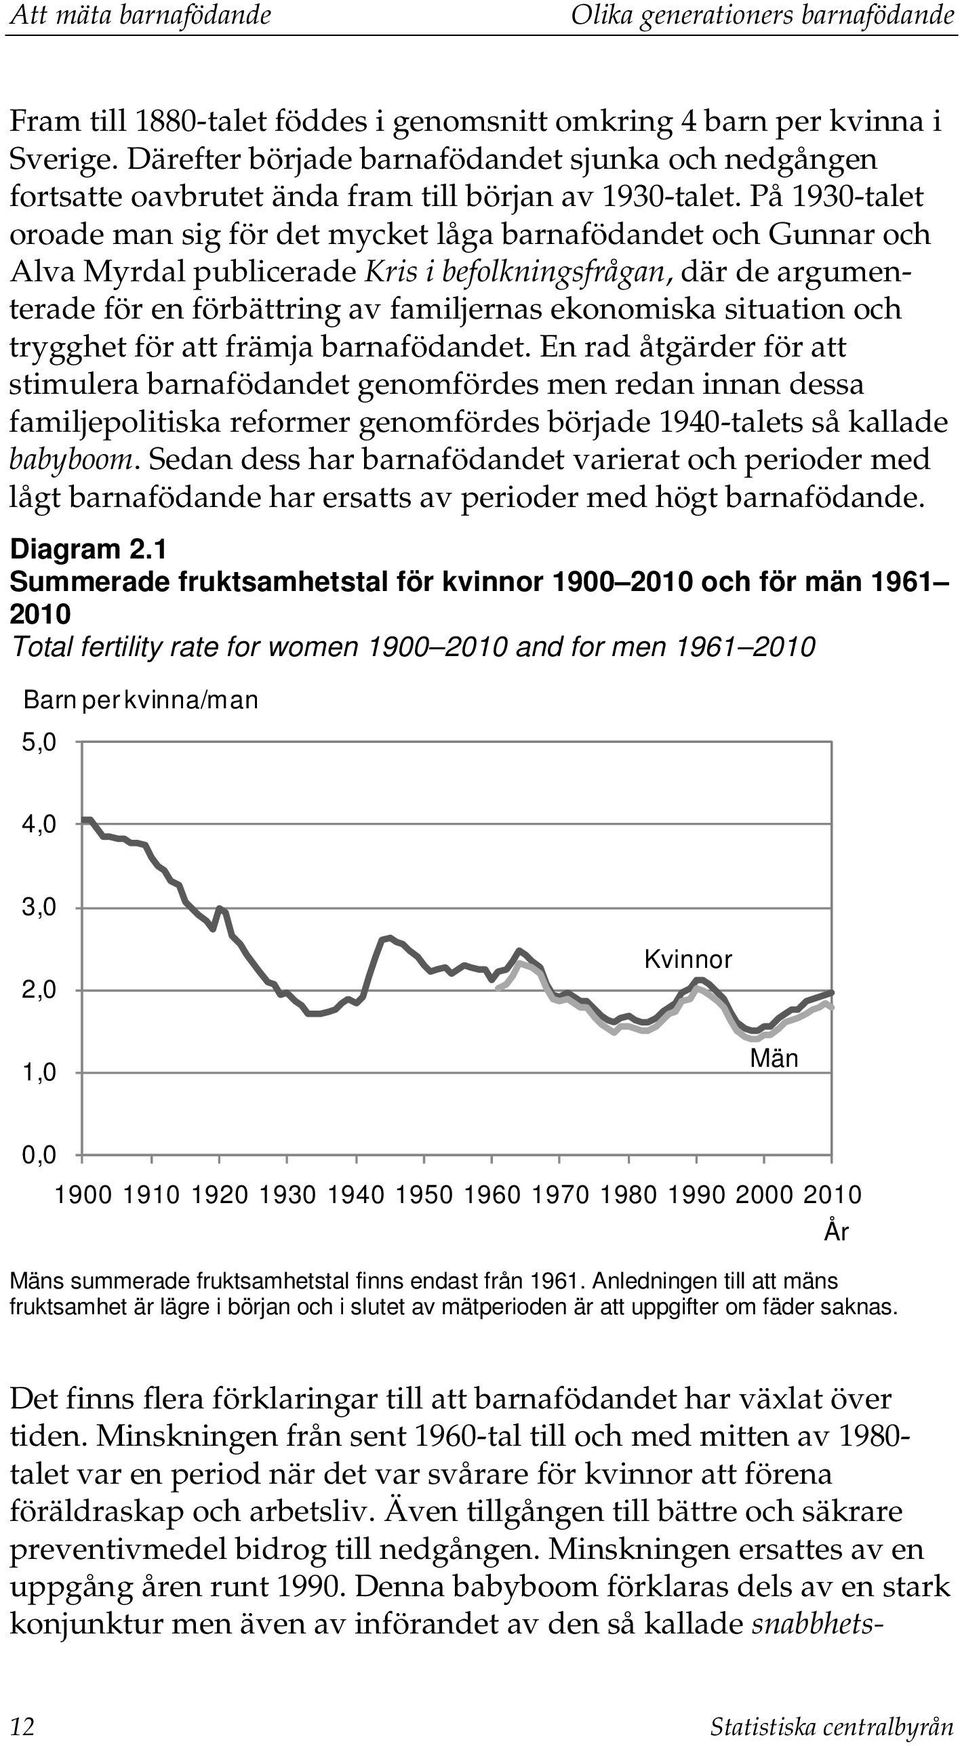 På 1930-talet oroade man sig för det mycket låga barnafödandet och Gunnar och Alva Myrdal publicerade Kris i befolkningsfrågan, där de argumenterade för en förbättring av familjernas ekonomiska